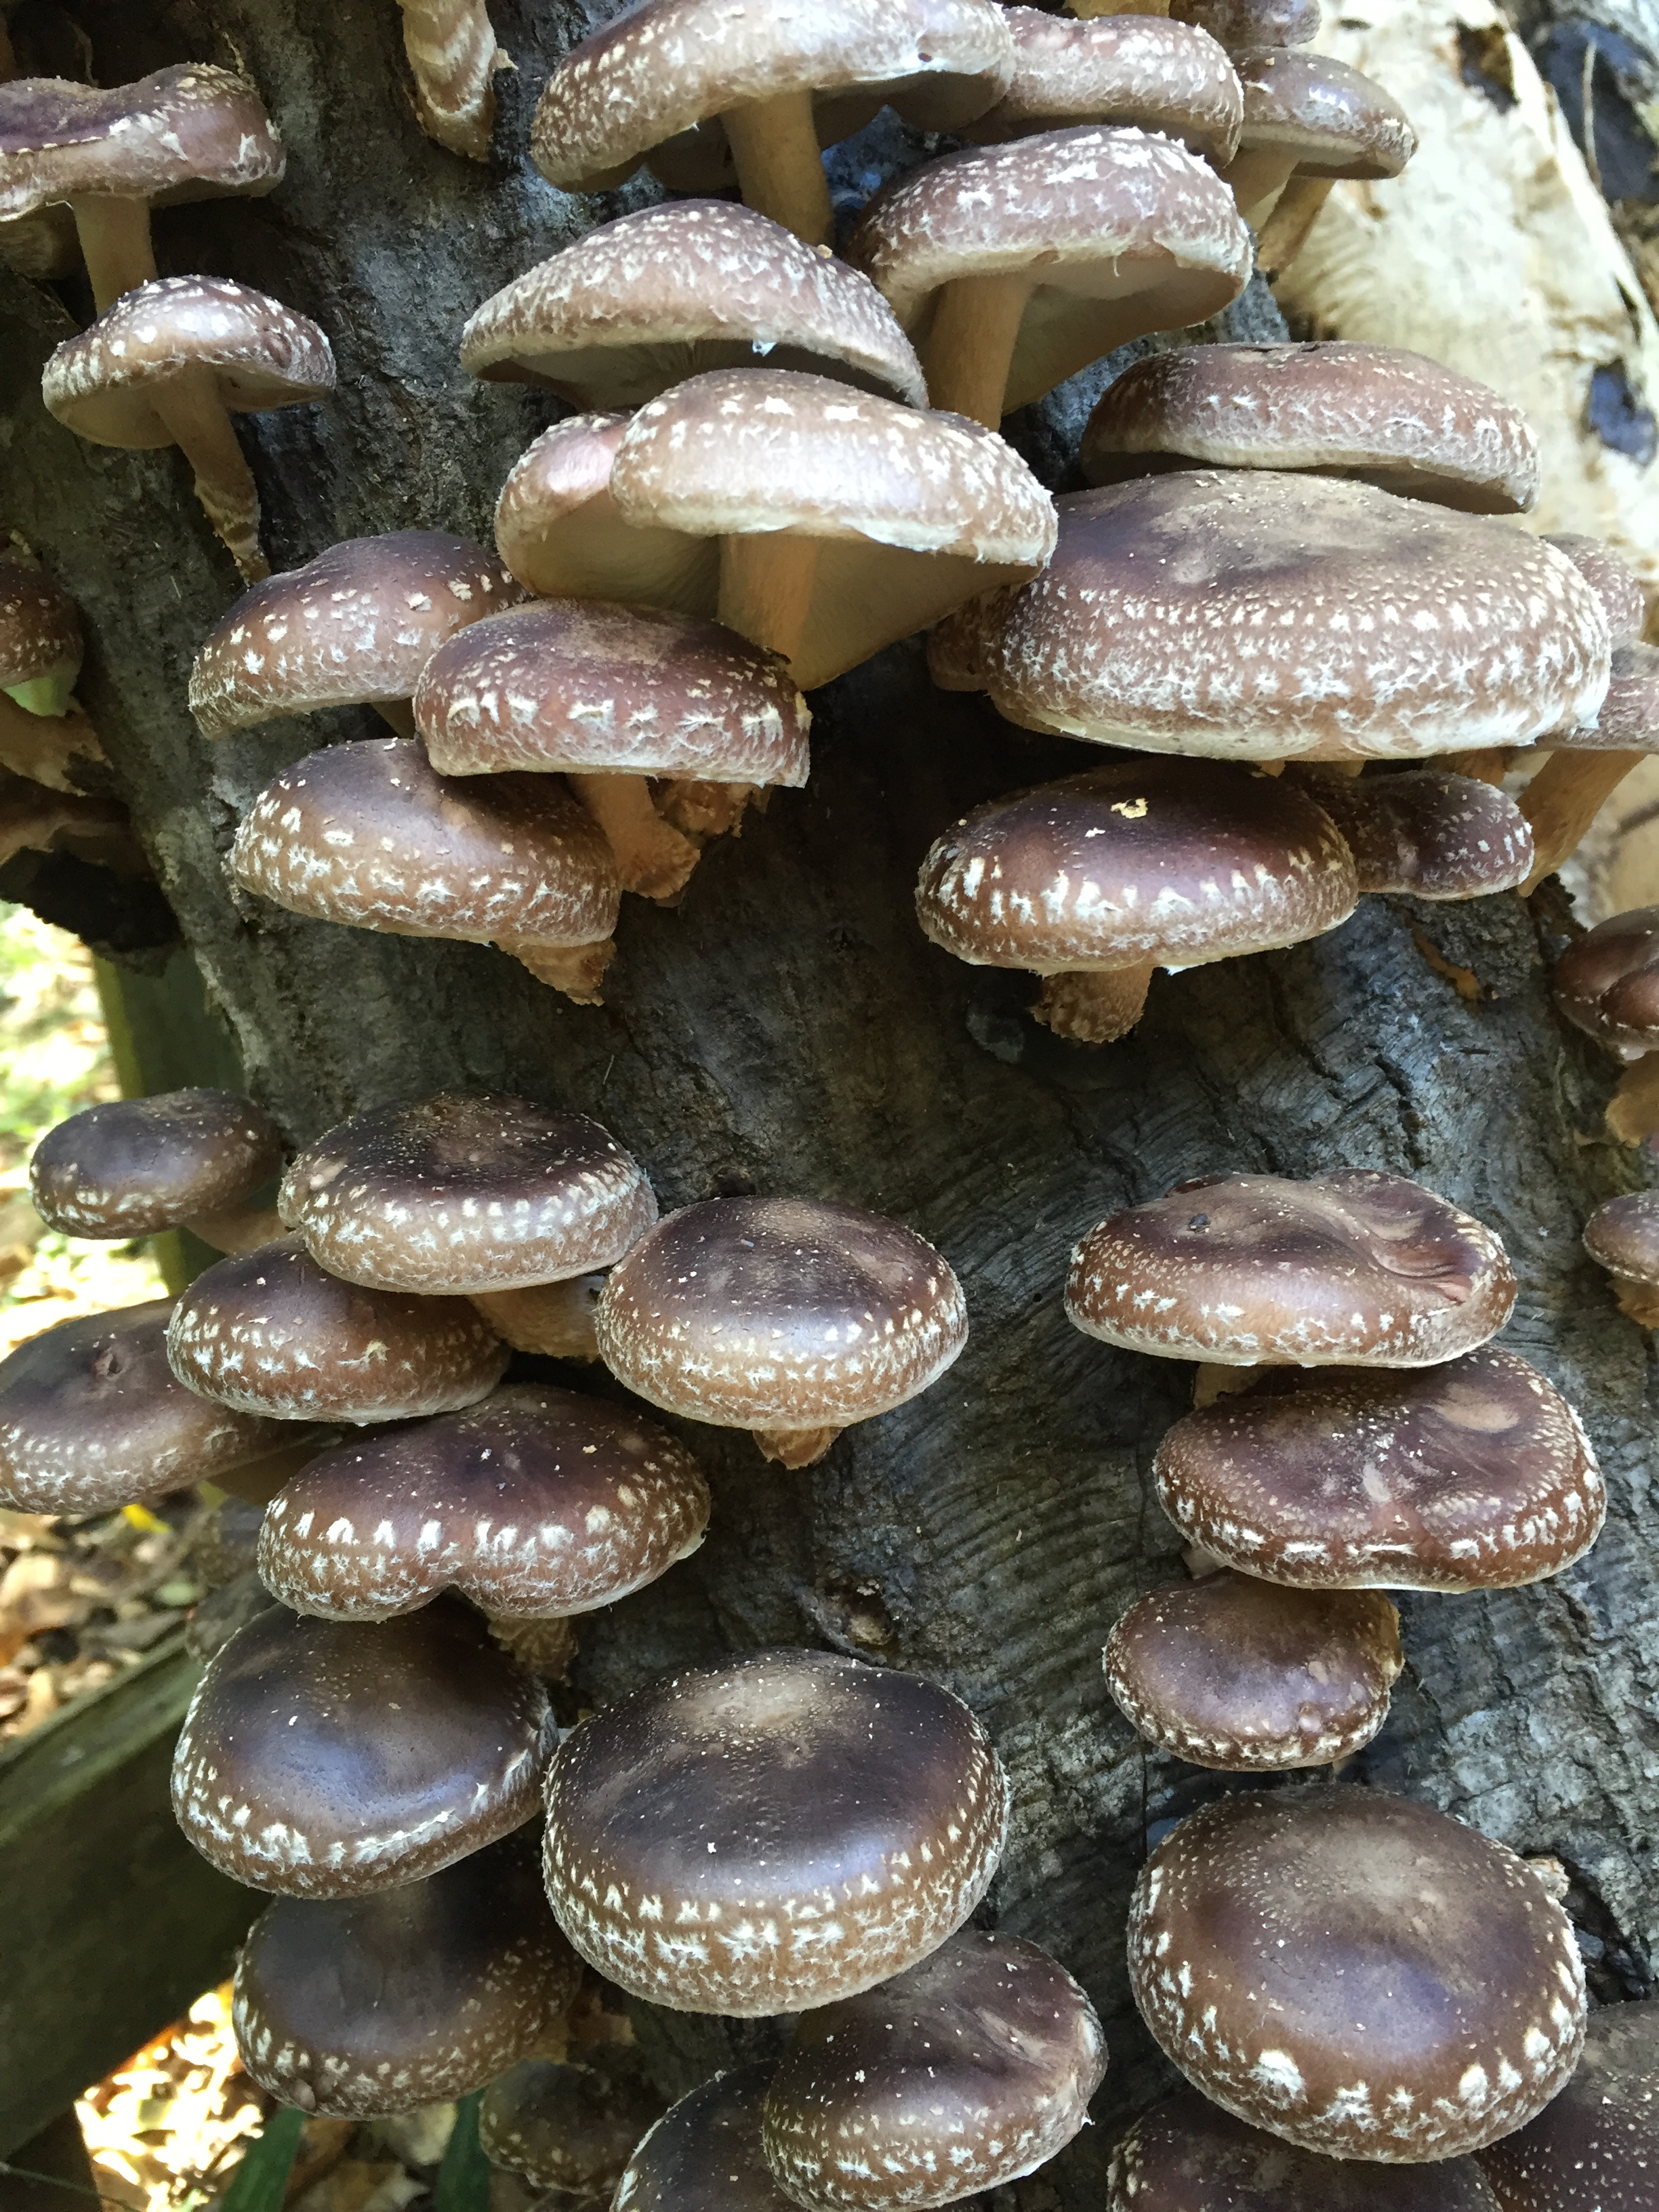 Grow Shiitake Mushrooms in Your Backyard